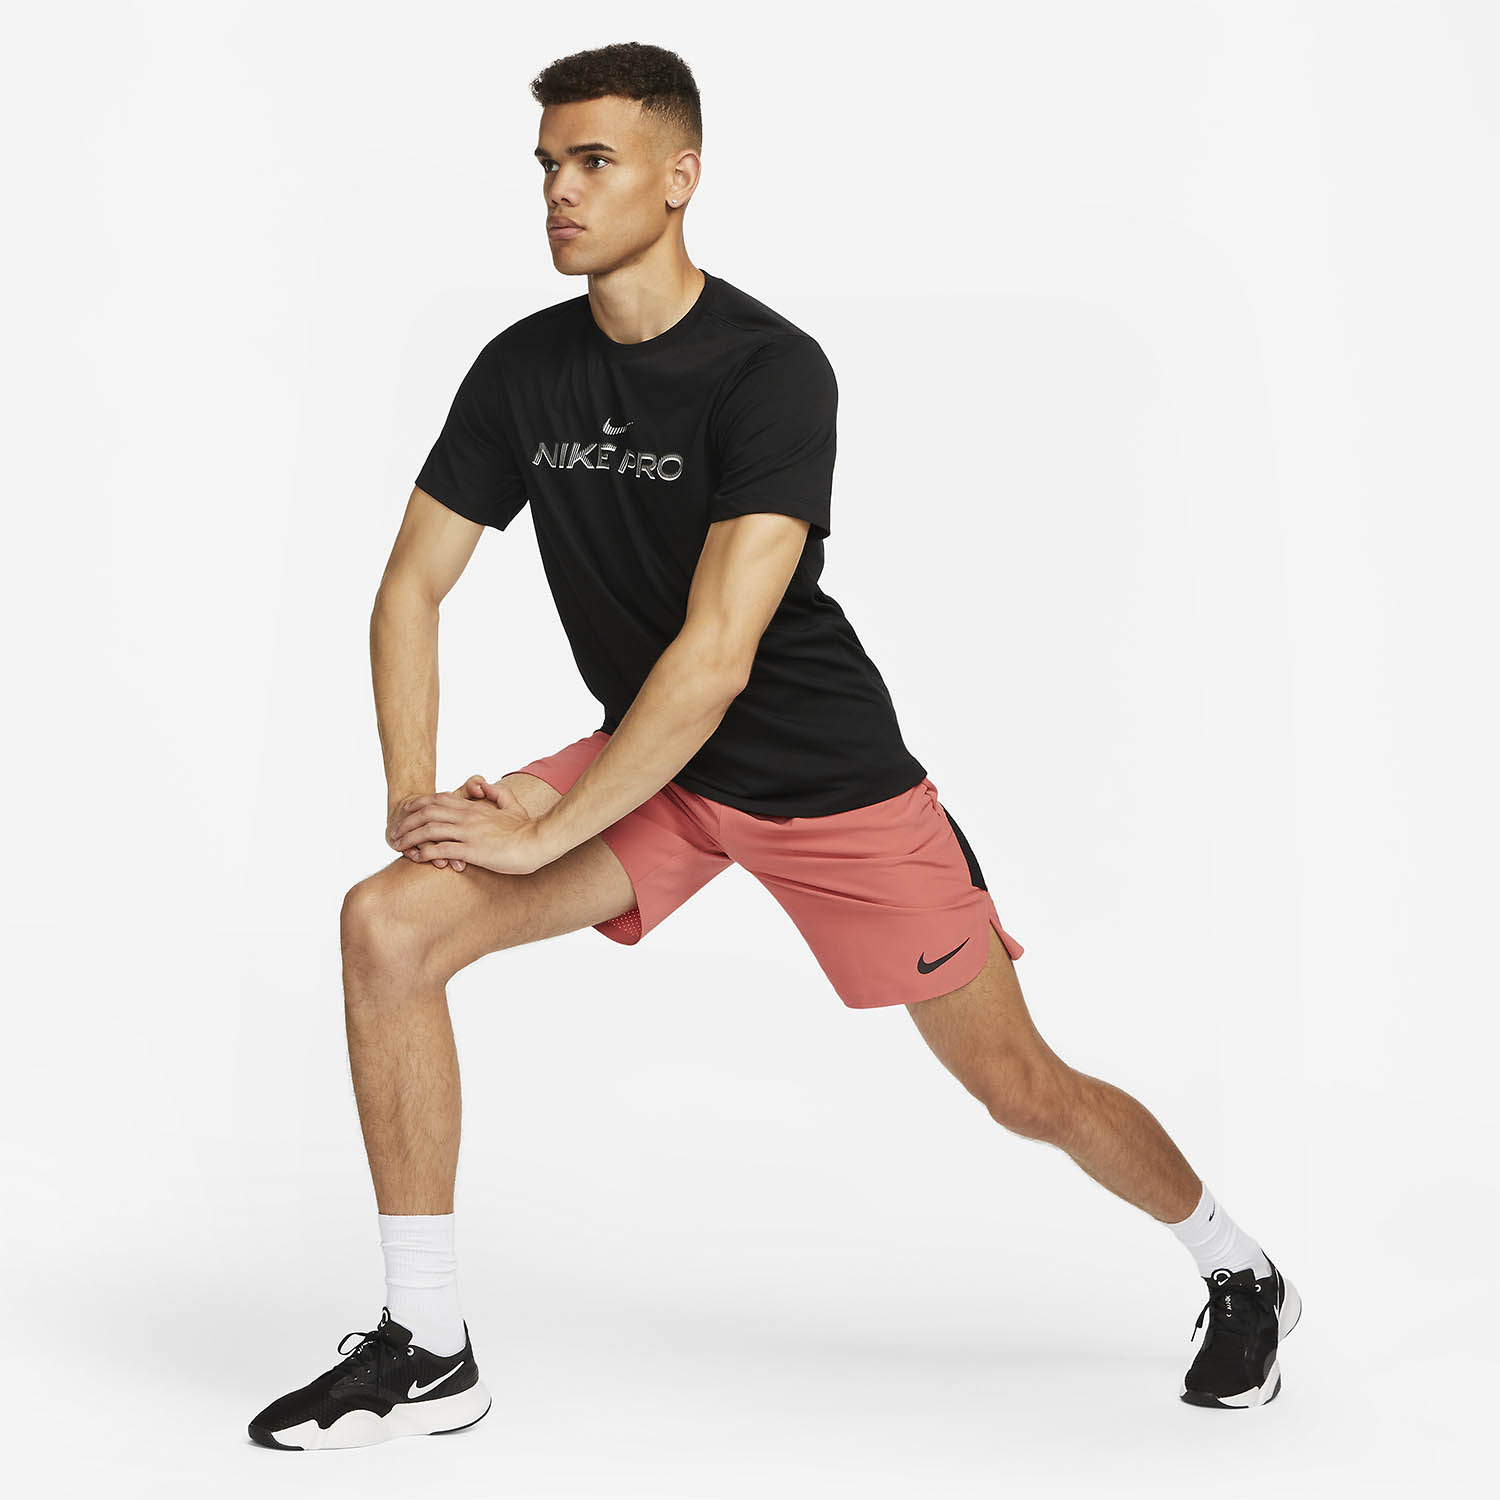 Nike Pro Fitness Camiseta - Black